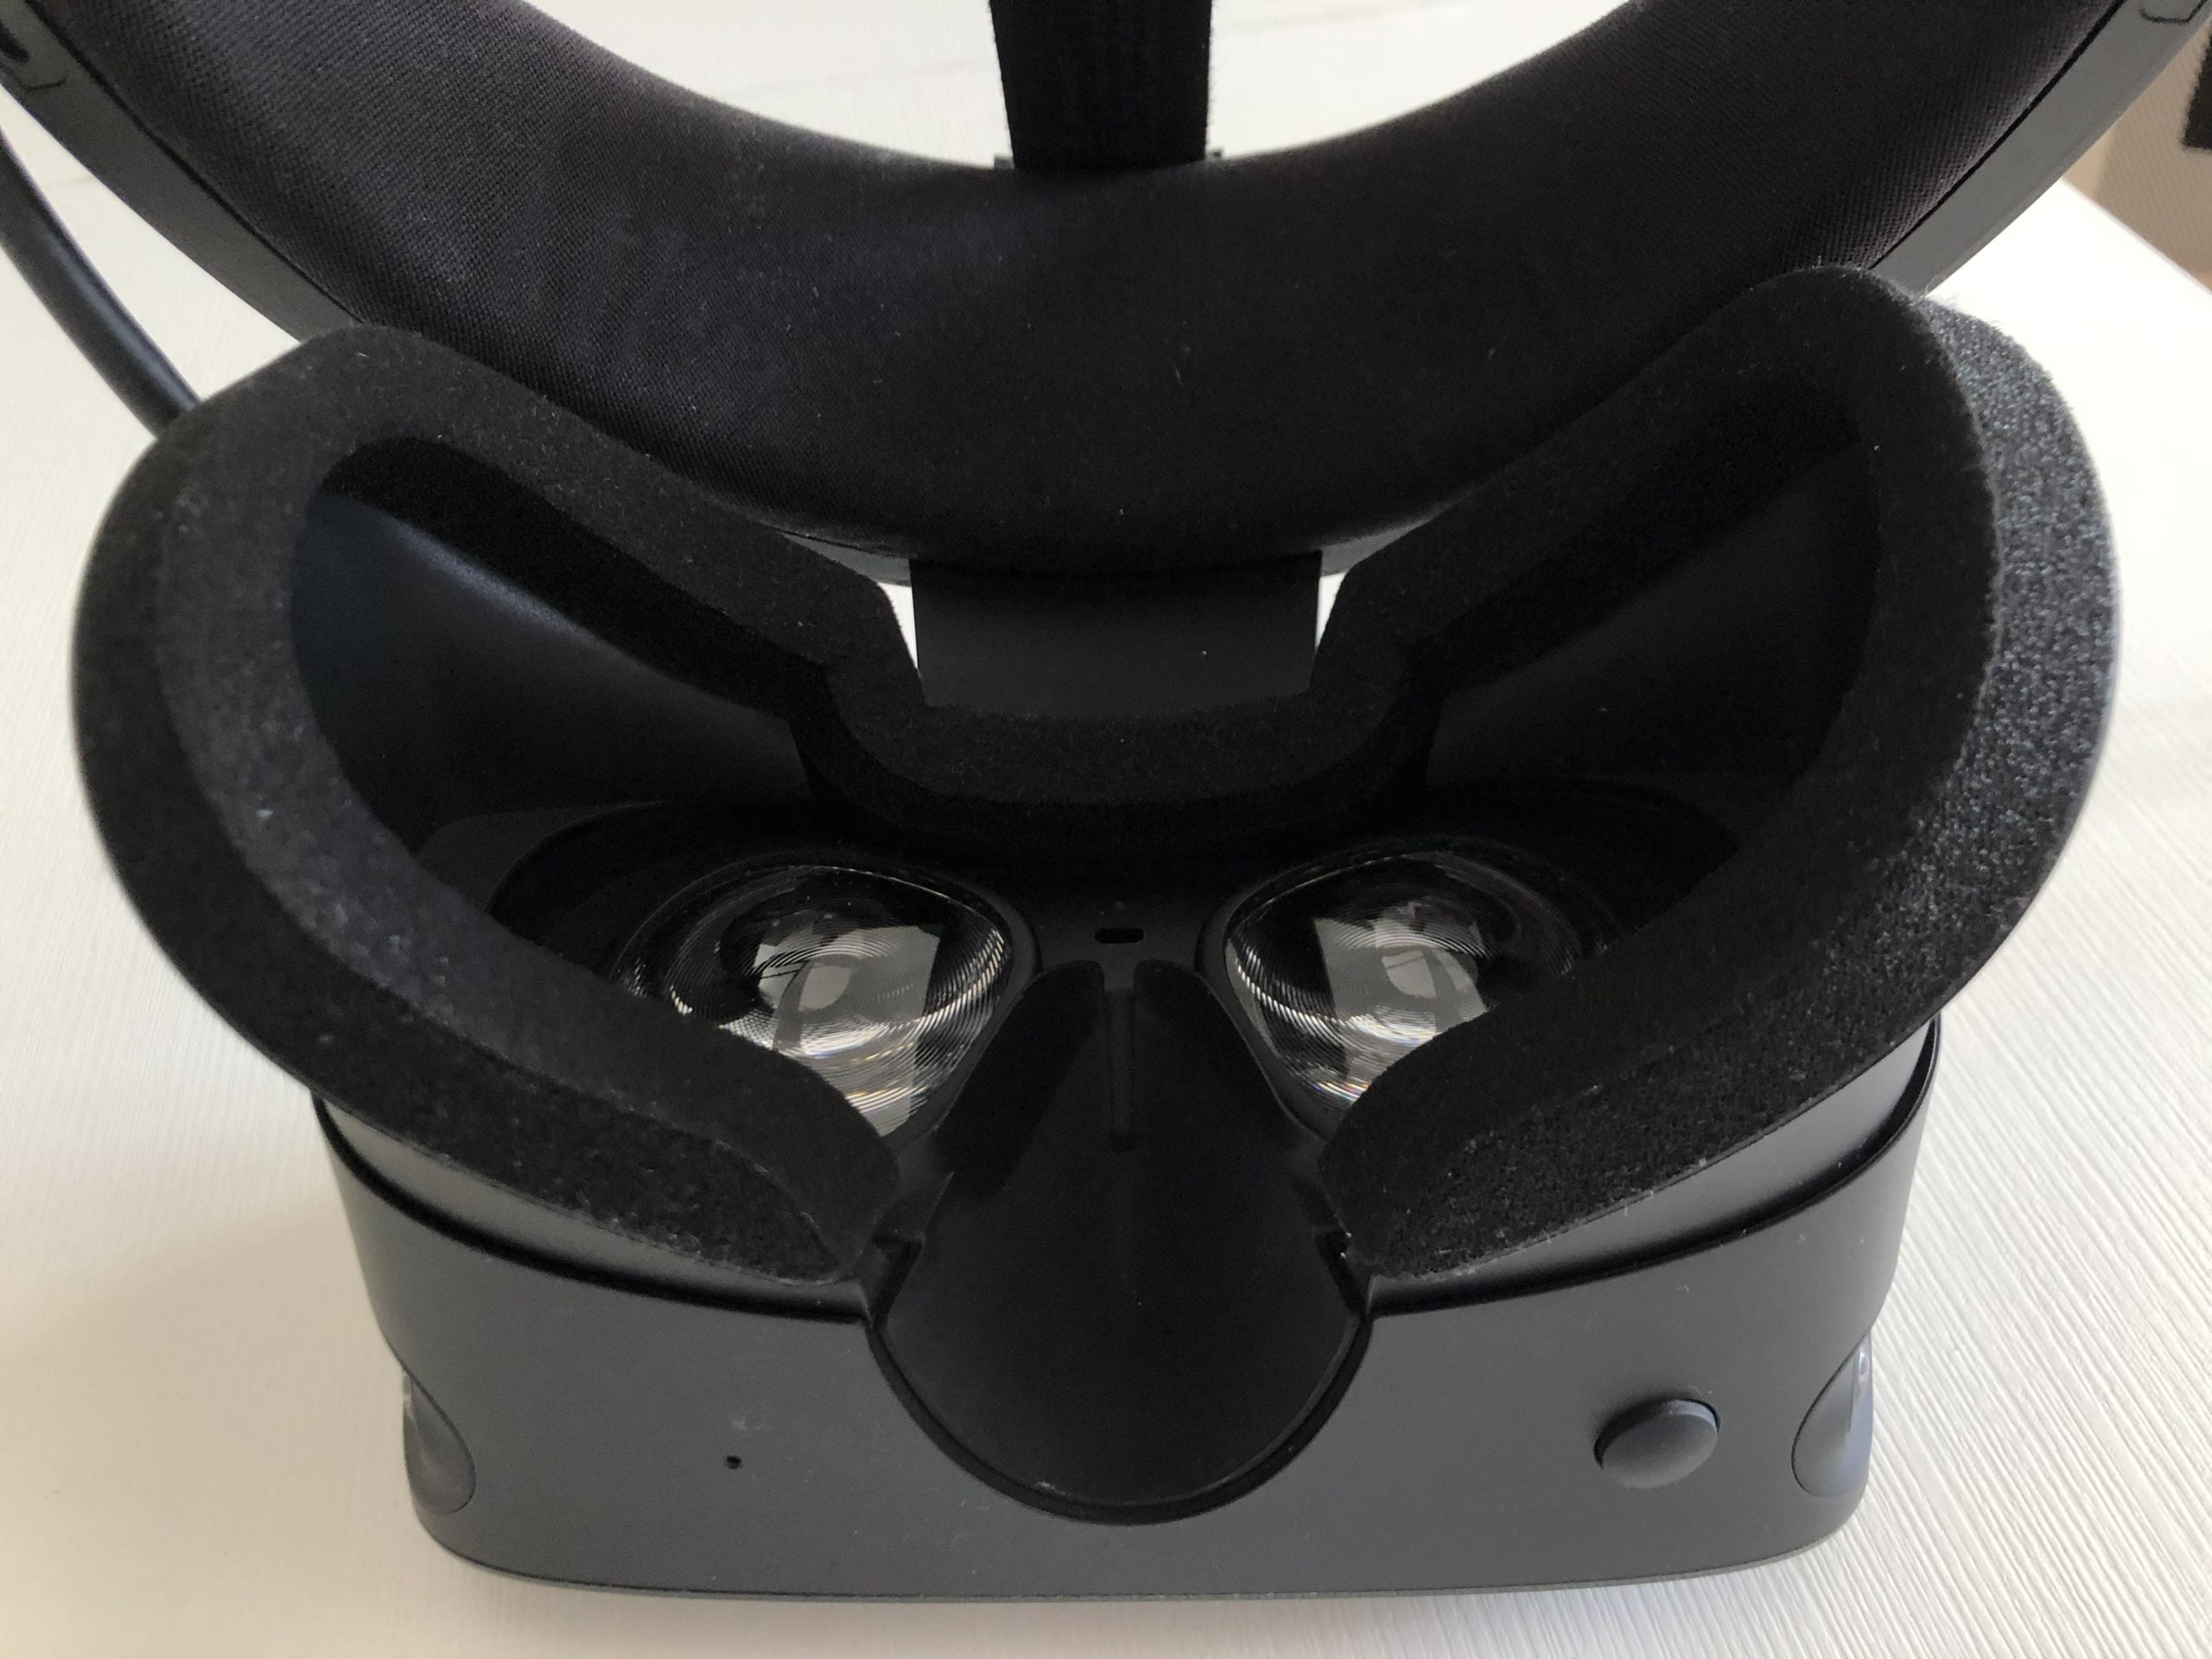 Oculus Rift S test inside